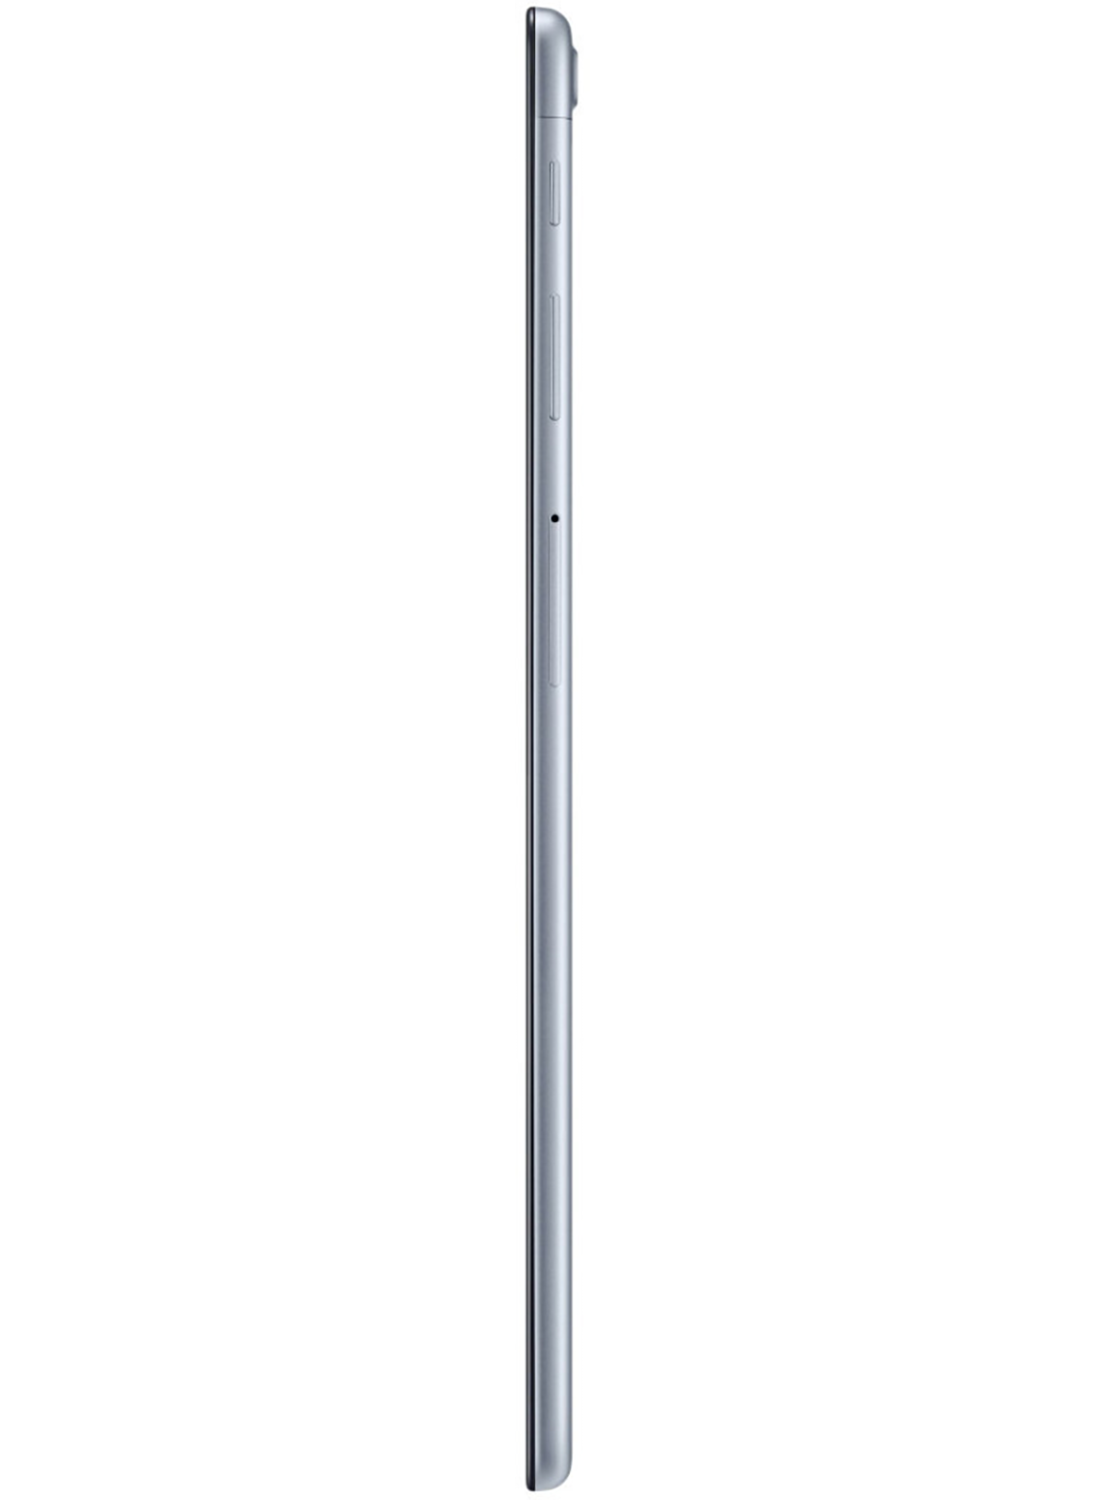 Samsung Galaxy Tab A (2019) 32GB SM-T515 LTE